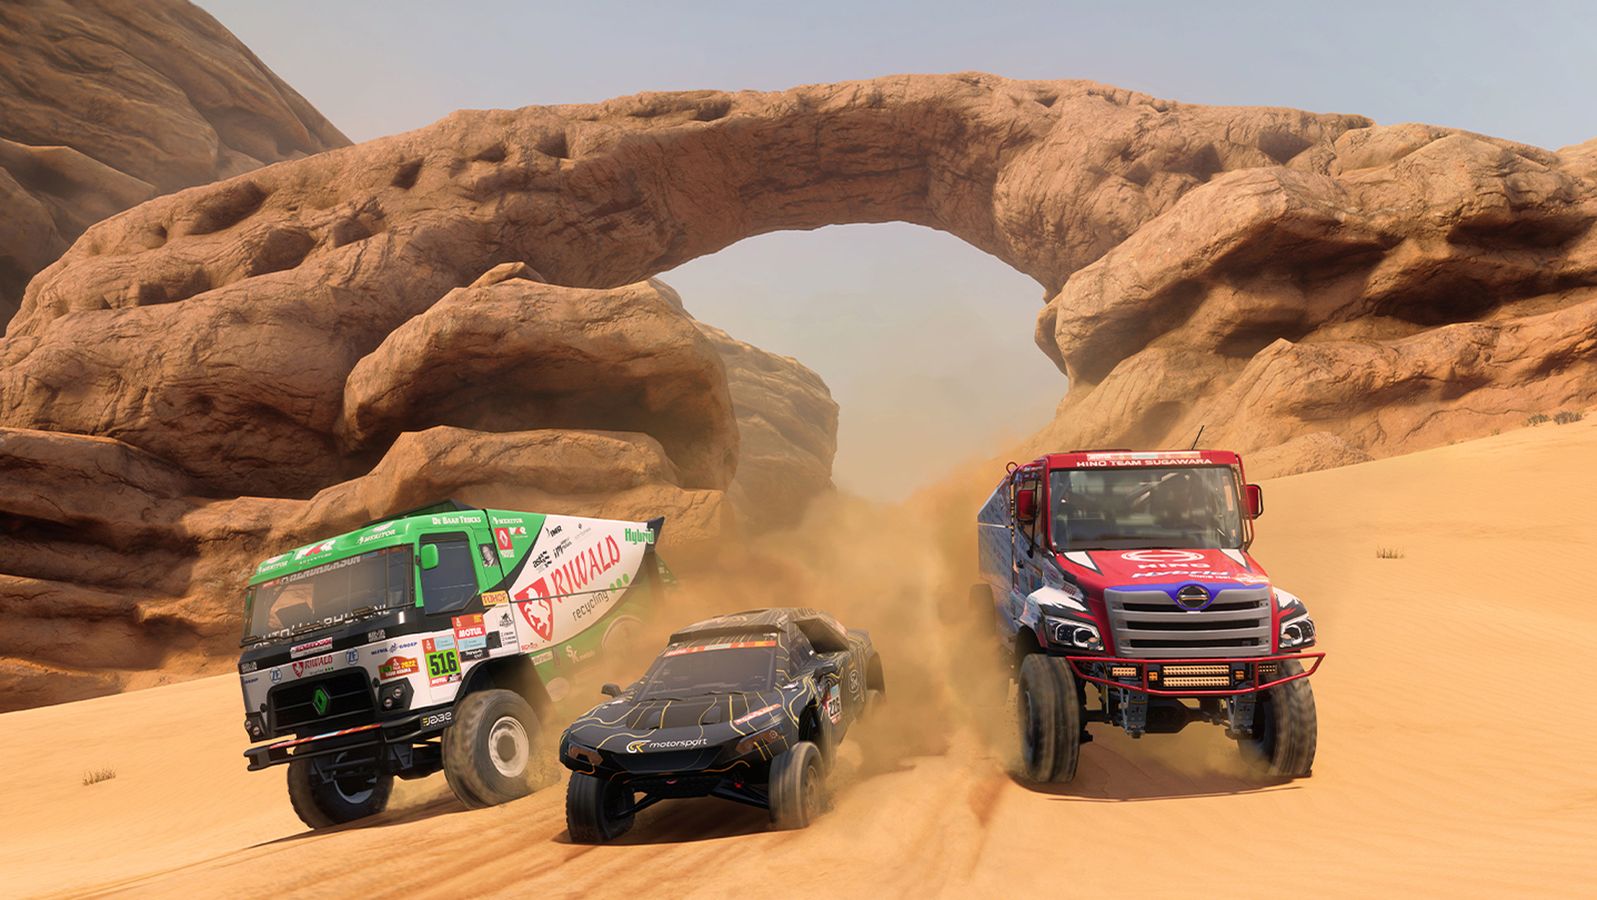 Dakar Desert Rally Hybrid Vehicle Pack